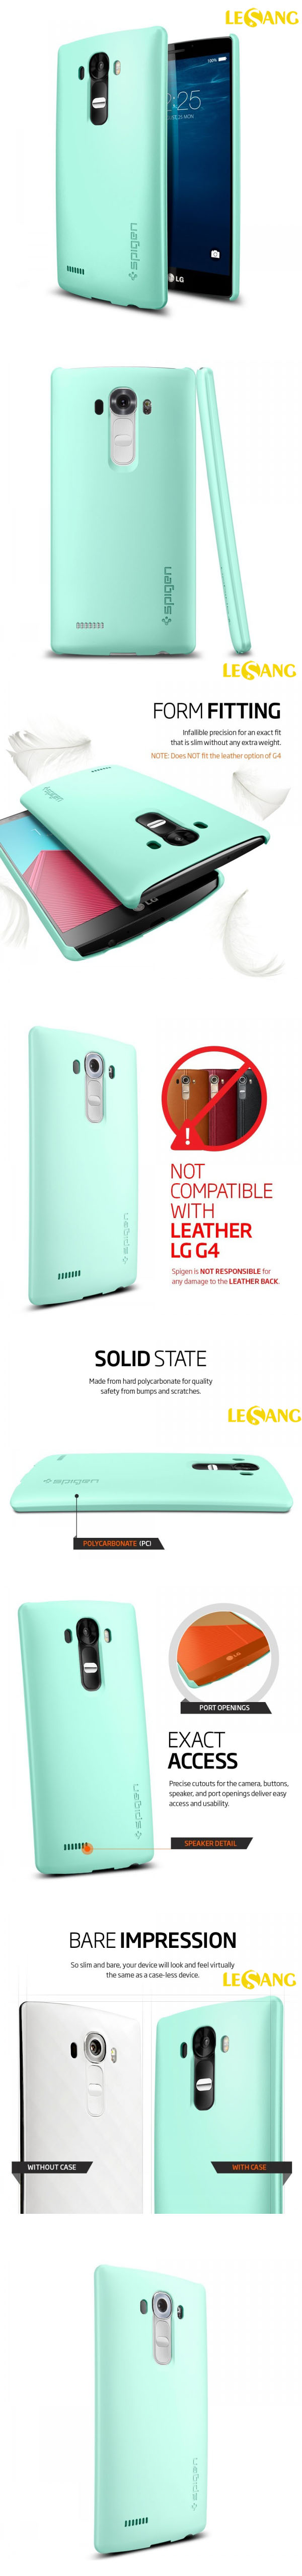 Ốp lưng LG G4 SGP Thin Fit 326